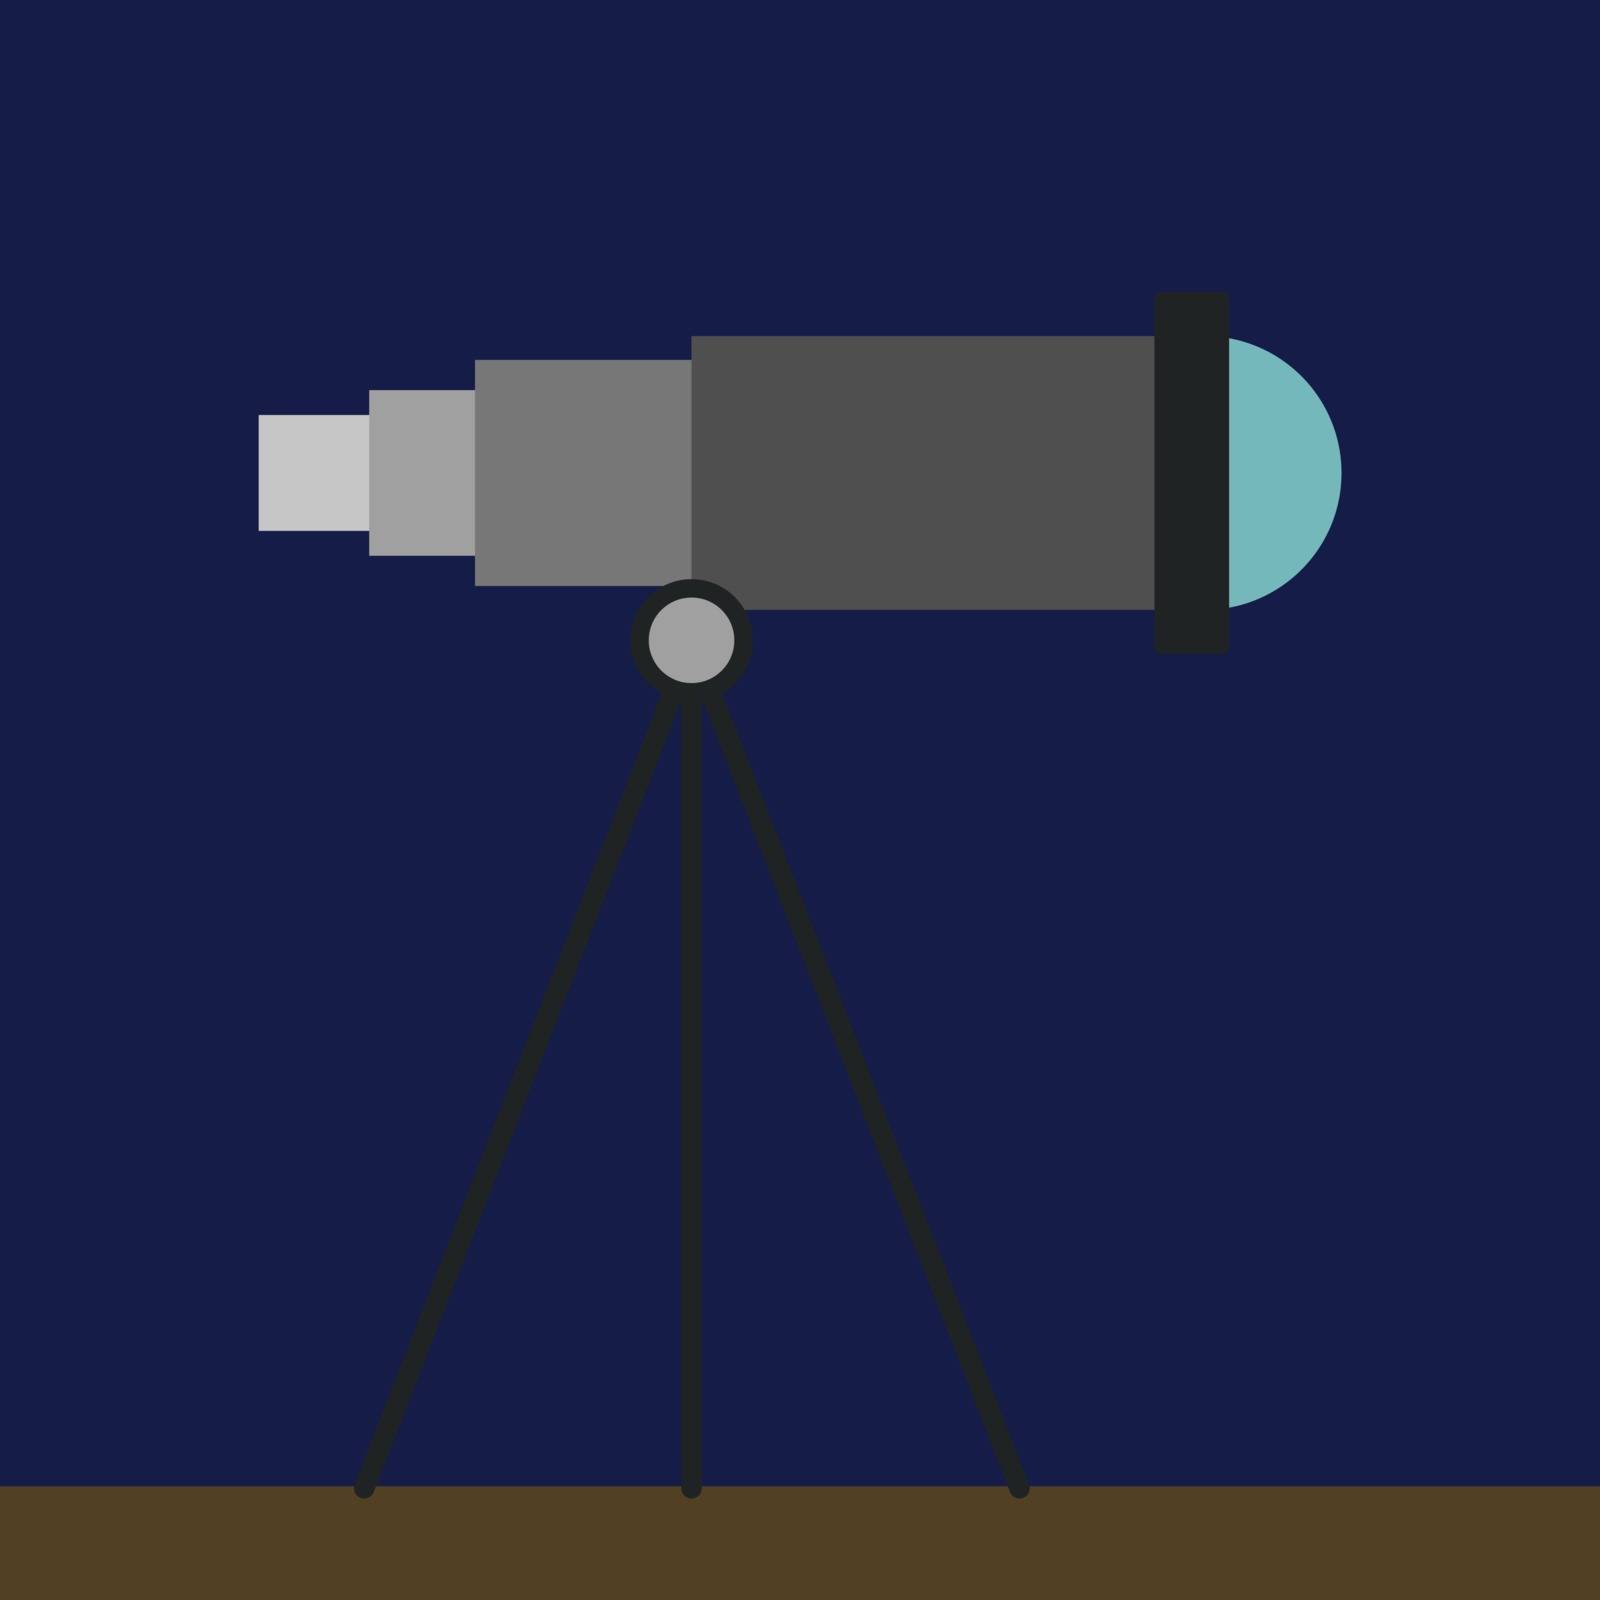 Telescope, illustration, vector on white background.